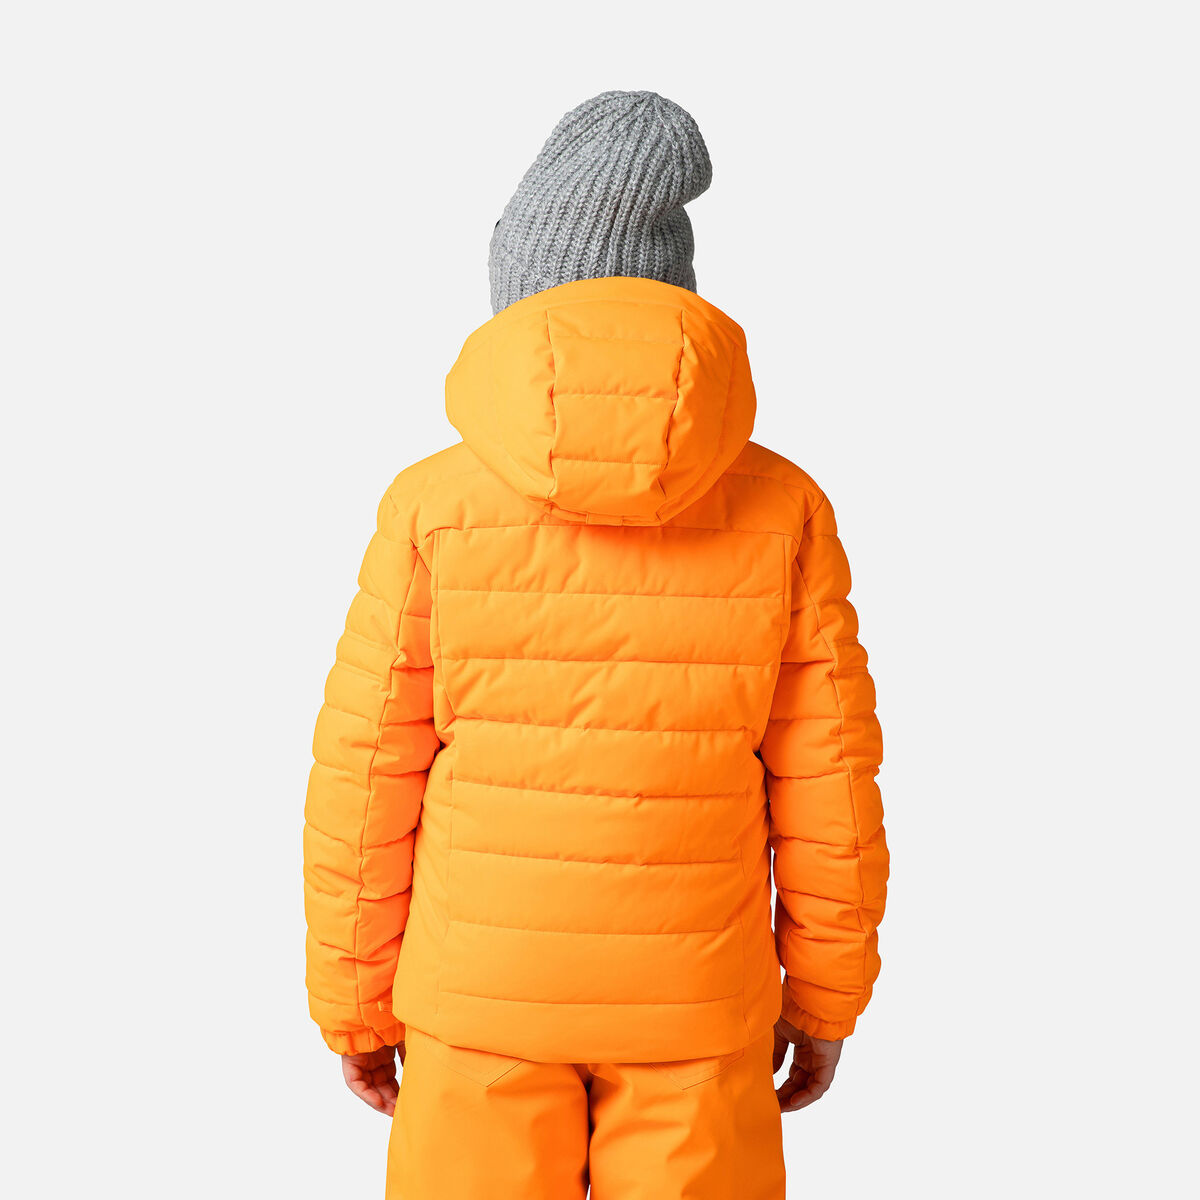 Rossignol Chaqueta de esquí Rapide para niño Orange